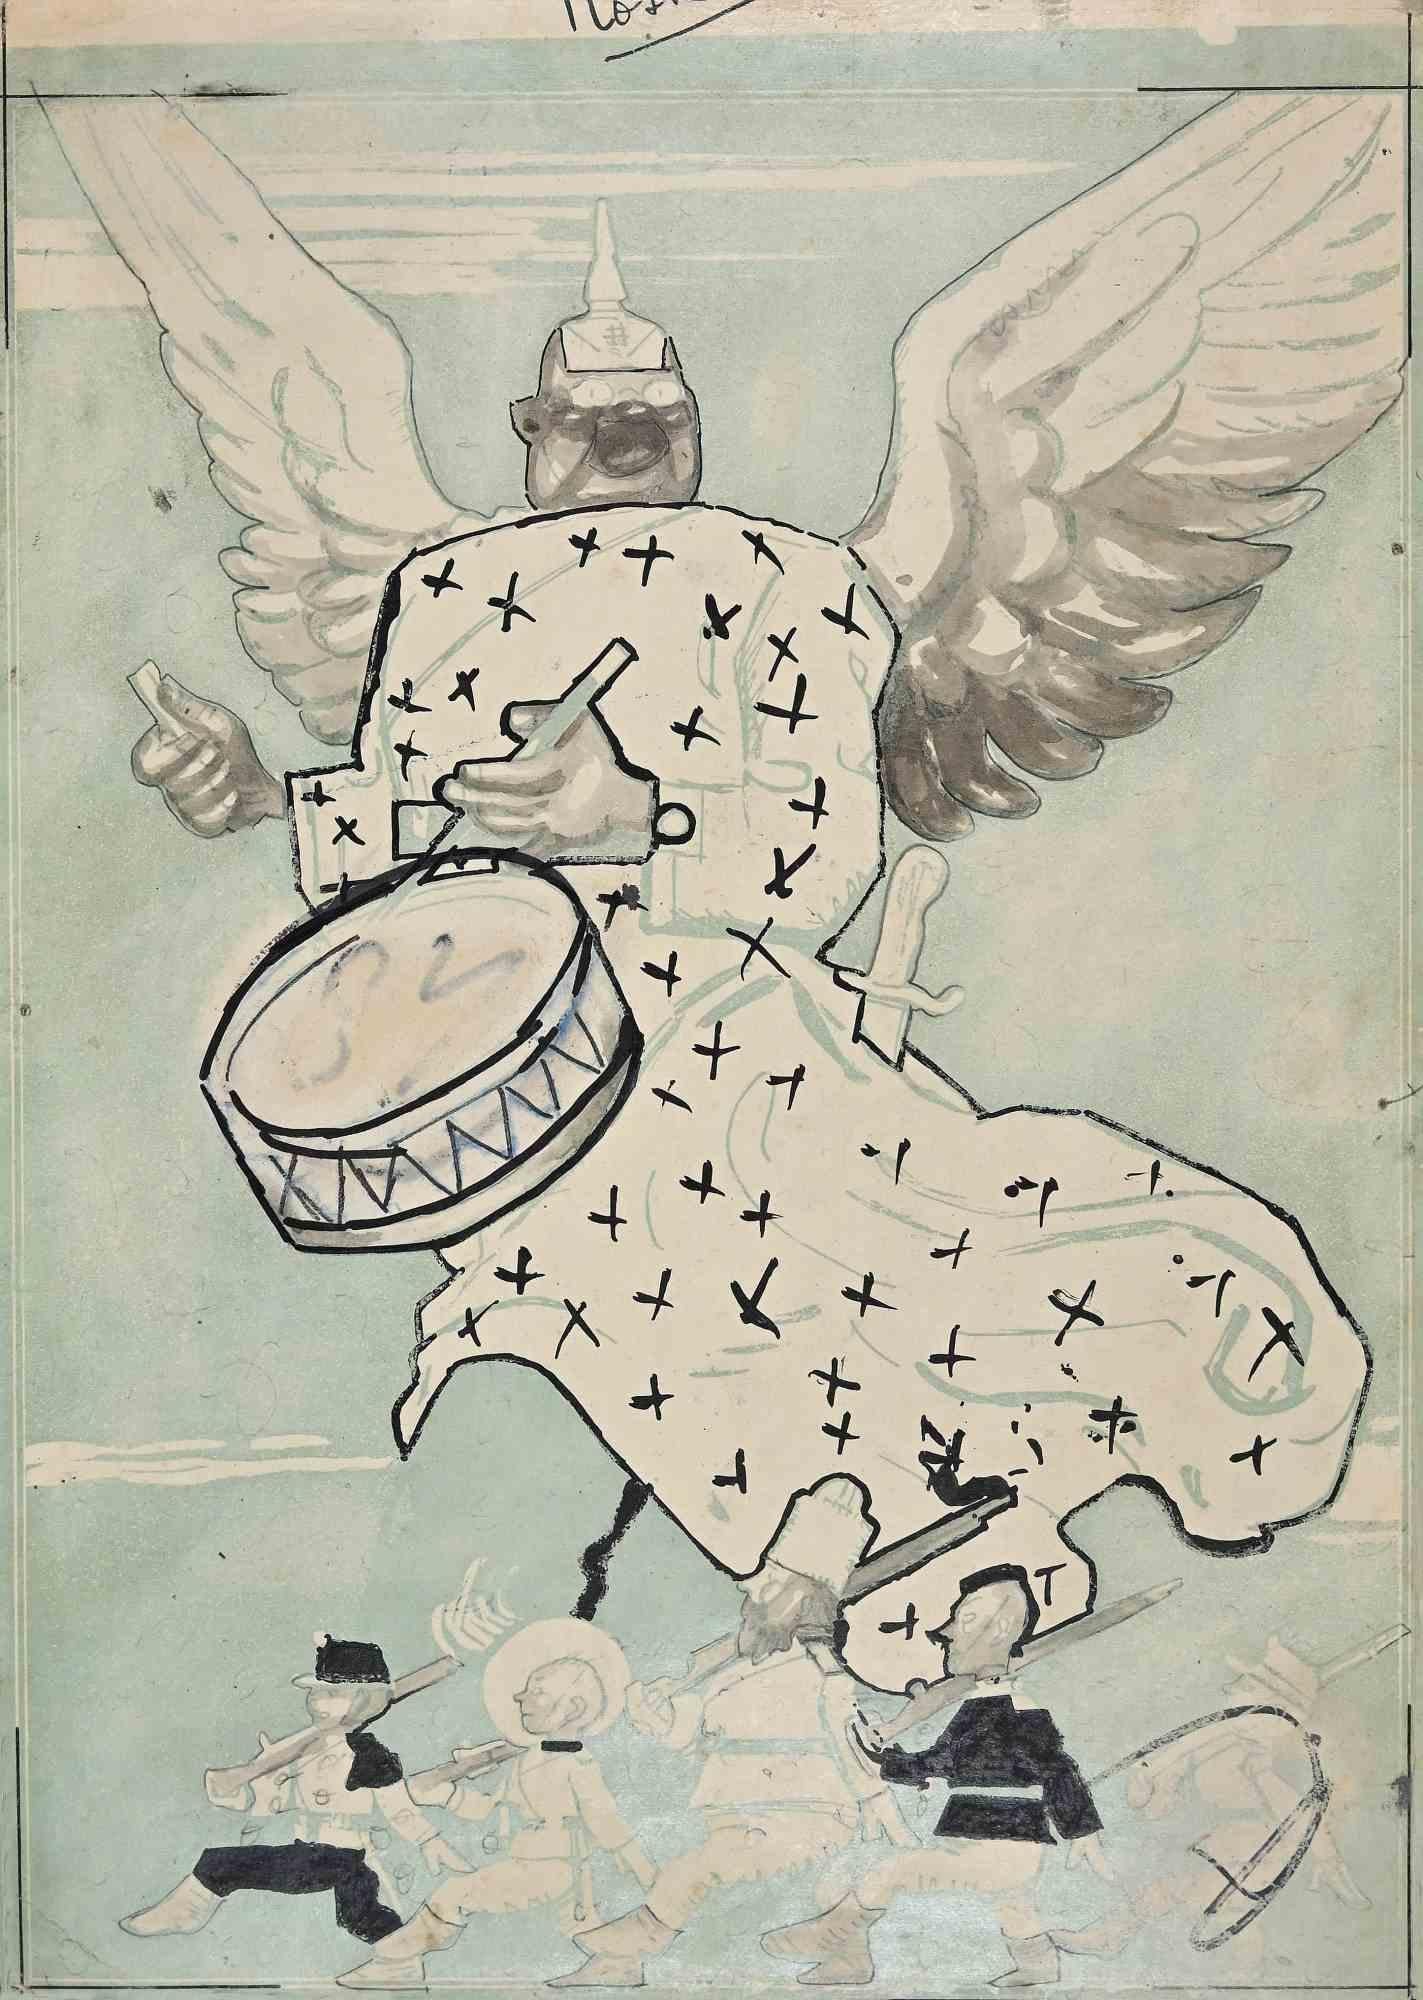 Der Ruf des Krieges ist ein Originalkunstwerk von Gabriele Galantara aus dem frühen 20. Jahrhundert.

Zeichnung in Tusche, Aquarell und Feder. 

Für das Cover des Magazins "L'Asino" veröffentlicht  am 19.12.1915.

Der Erhaltungszustand ist gut und